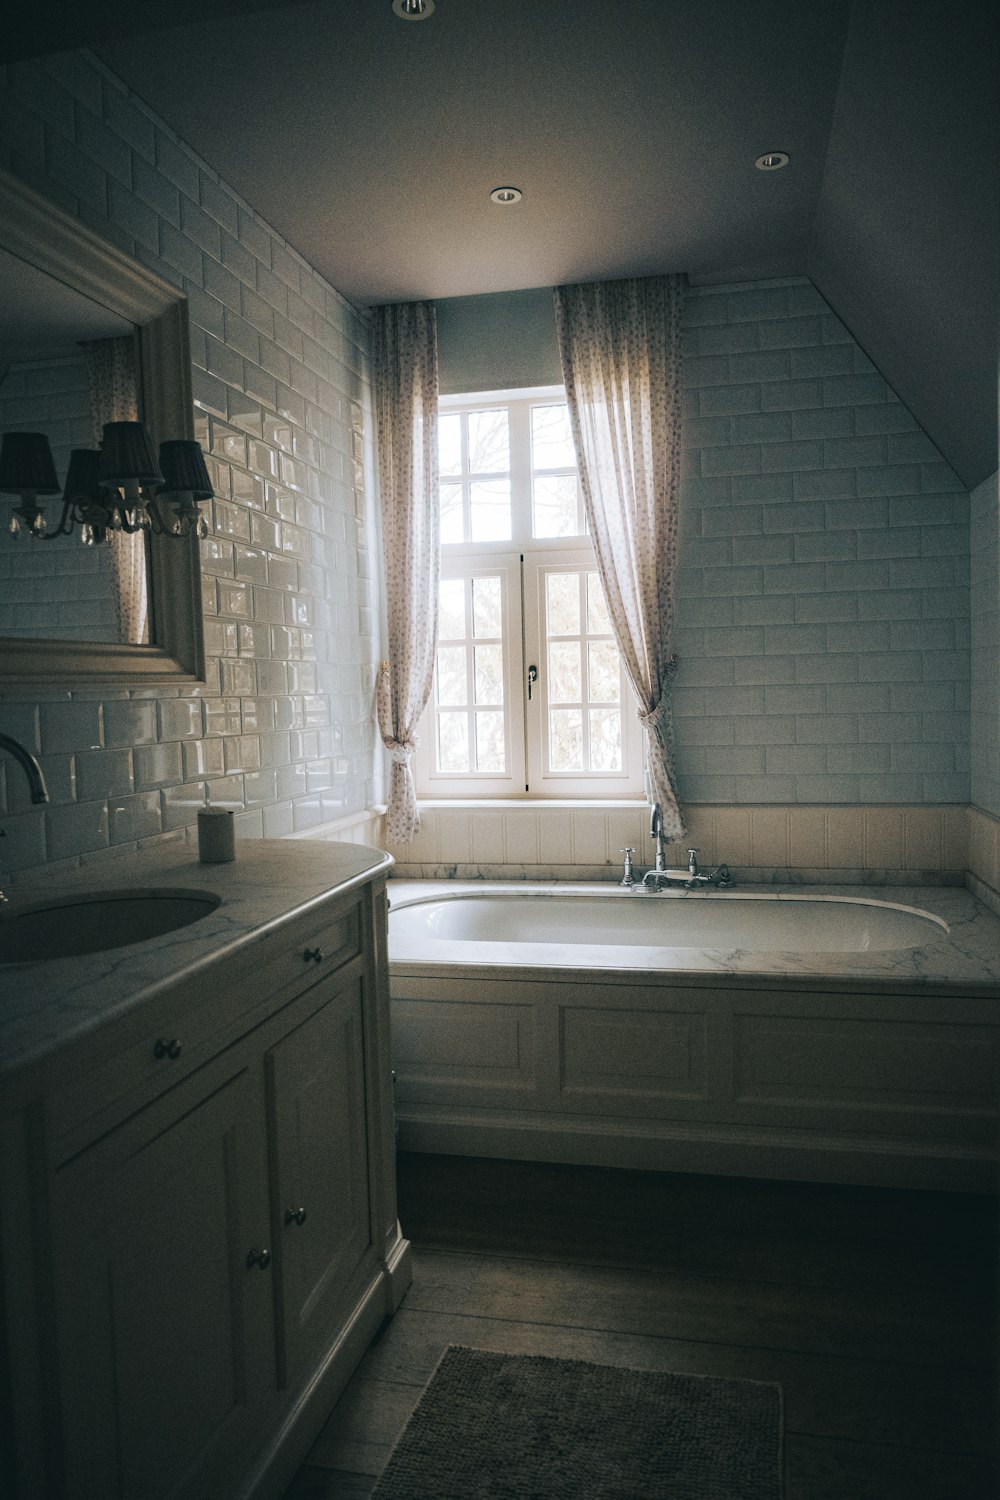 white bathtub near white window curtain